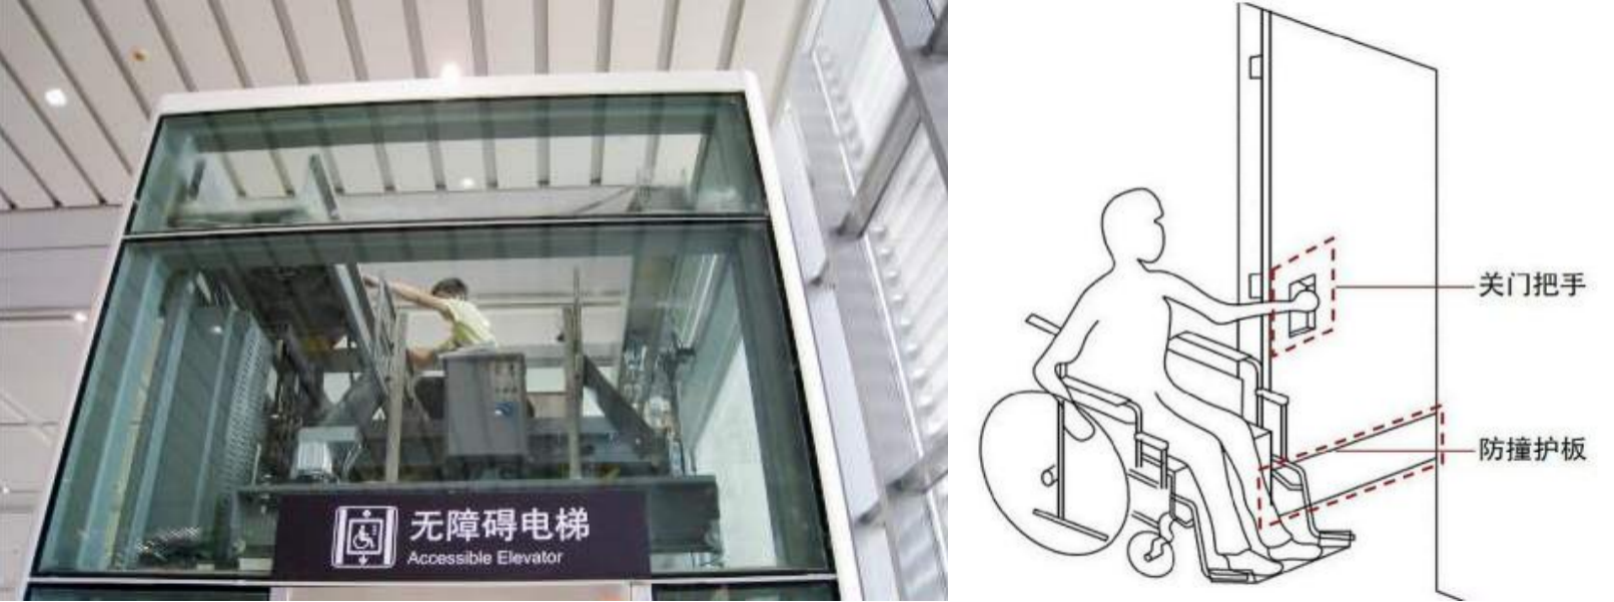 无障碍电梯与无障碍门图示  图片来源:网络